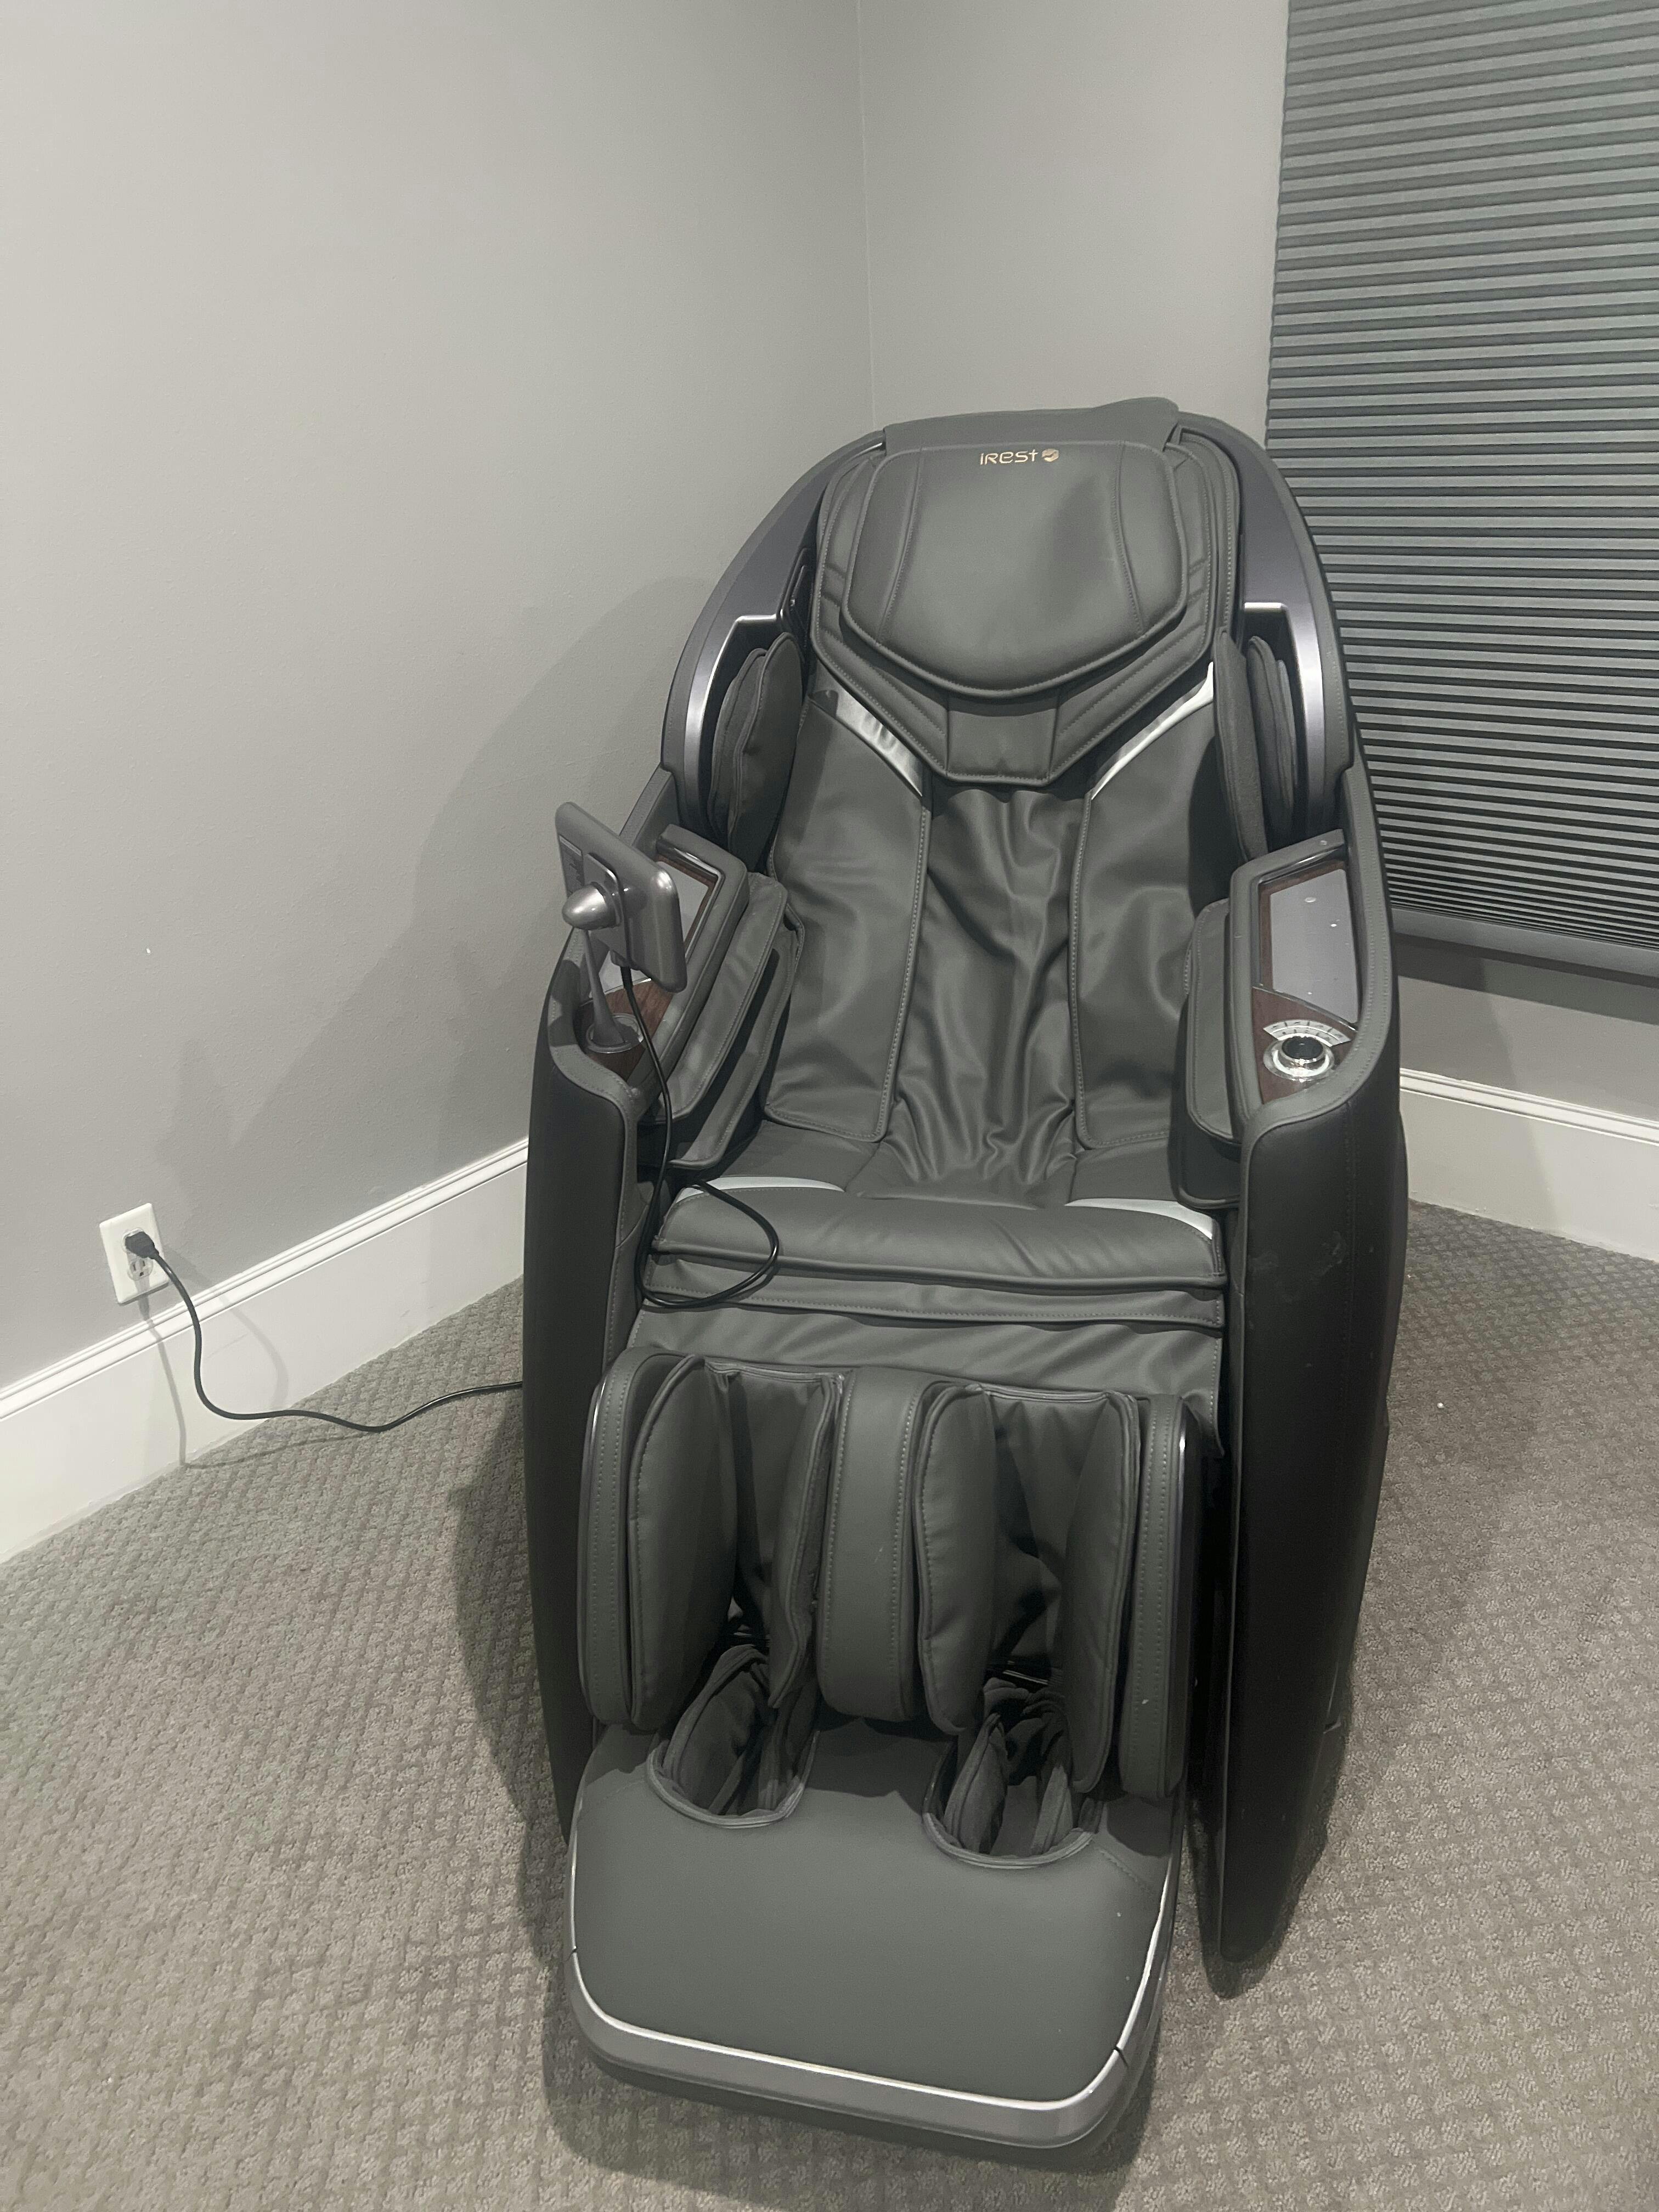 irest a710 4d massage chair